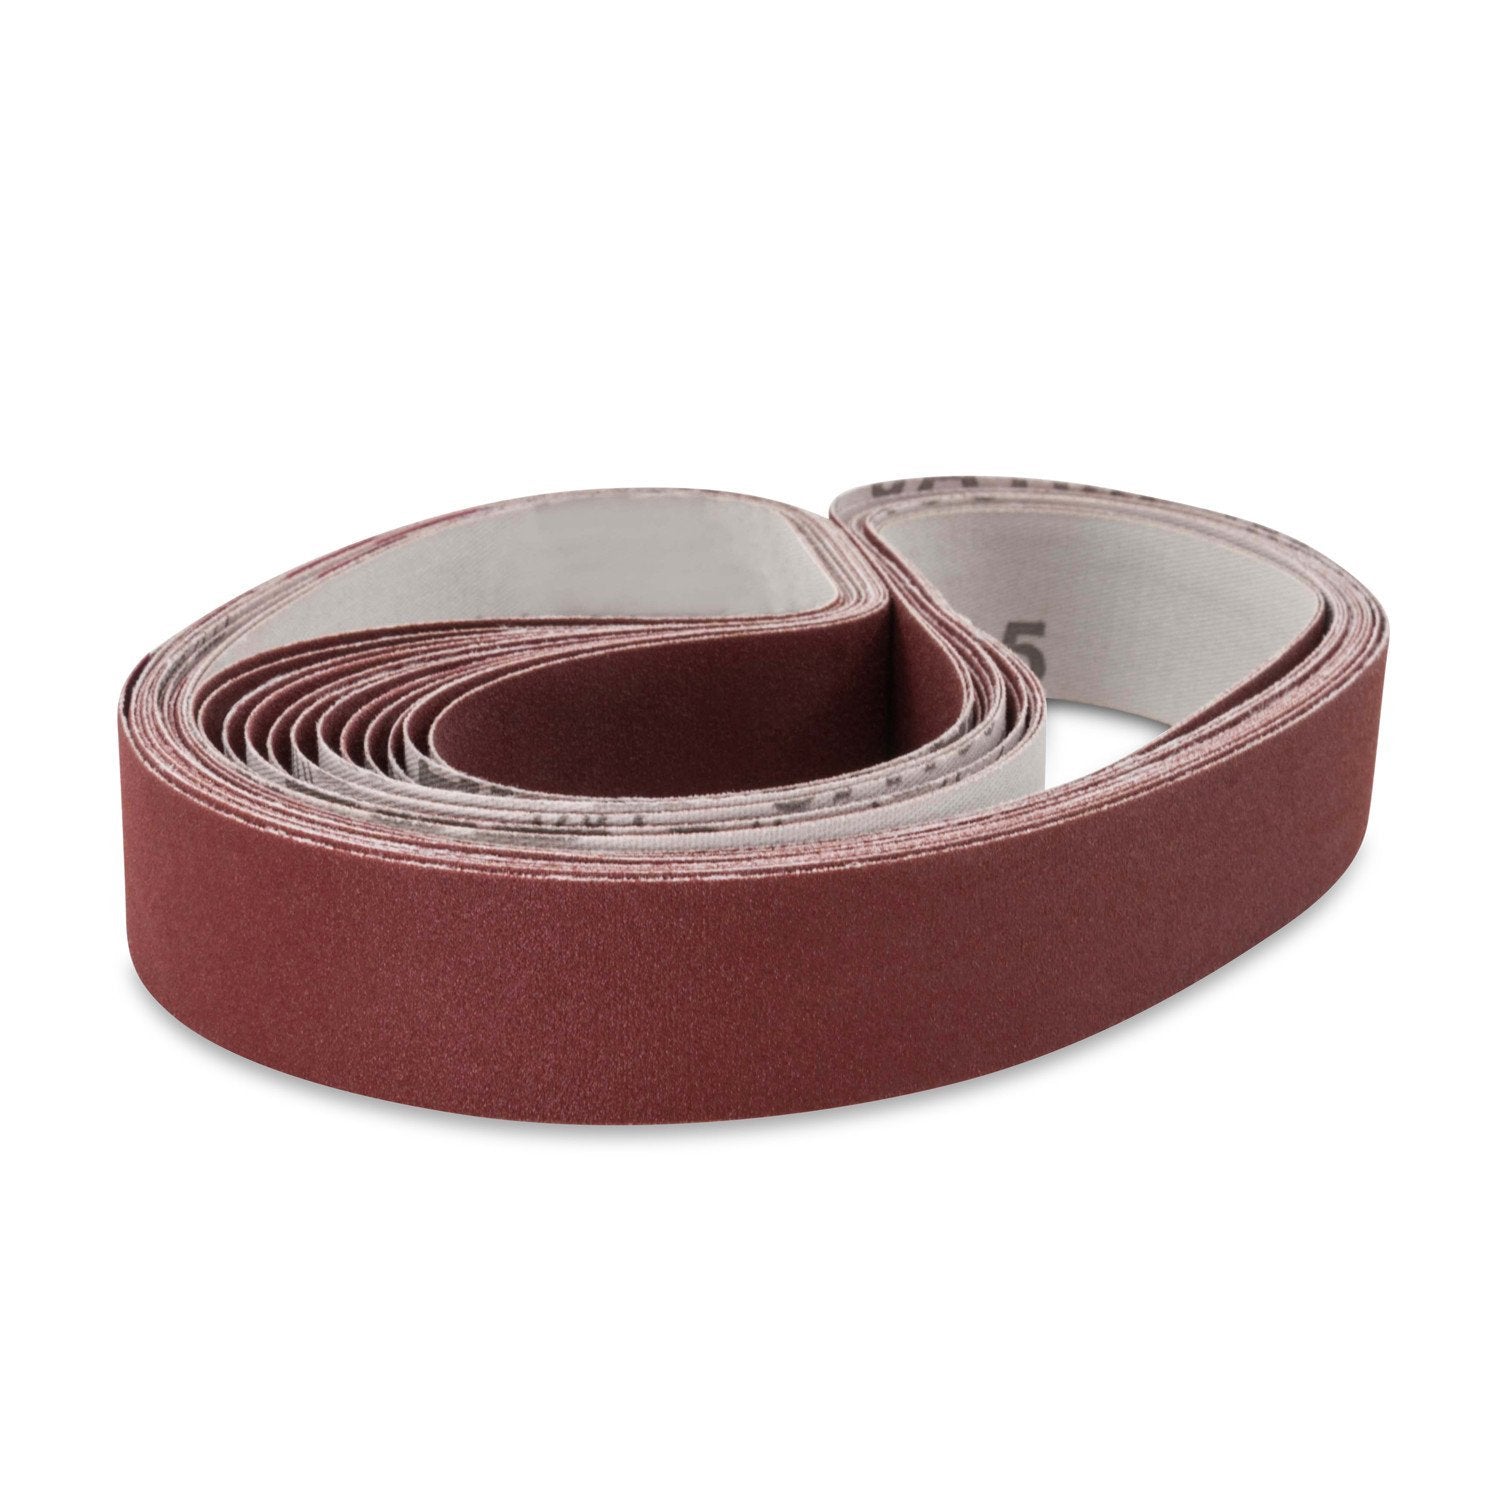 1 X 18 Inch Knife Sharpener Sanding Belts, 10 Pack - Red Label Abrasives